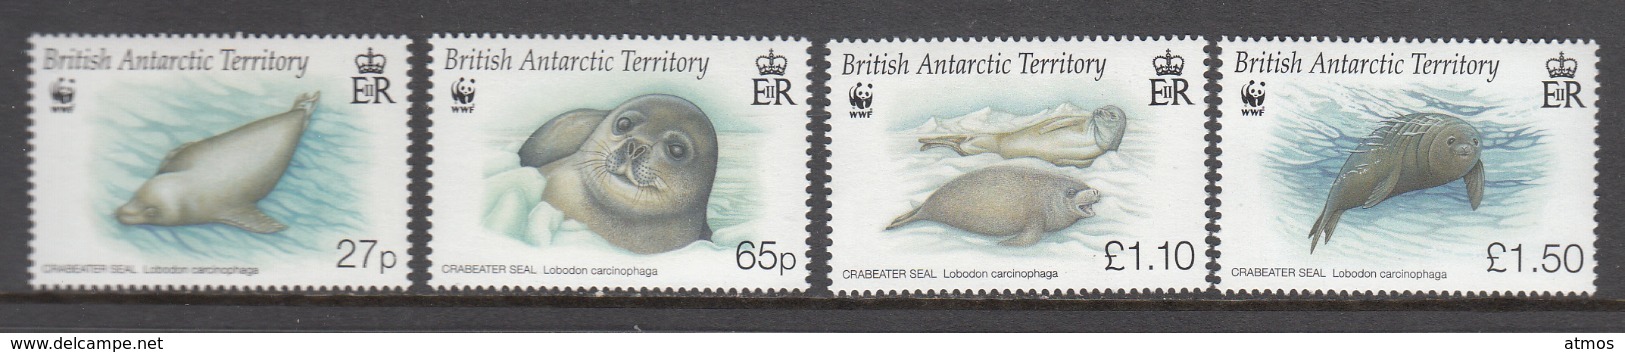 British Antarctic Territory / BAT MNH Michel Nr 505/08 From 2009 / Catw 20.00 EUR - Ongebruikt